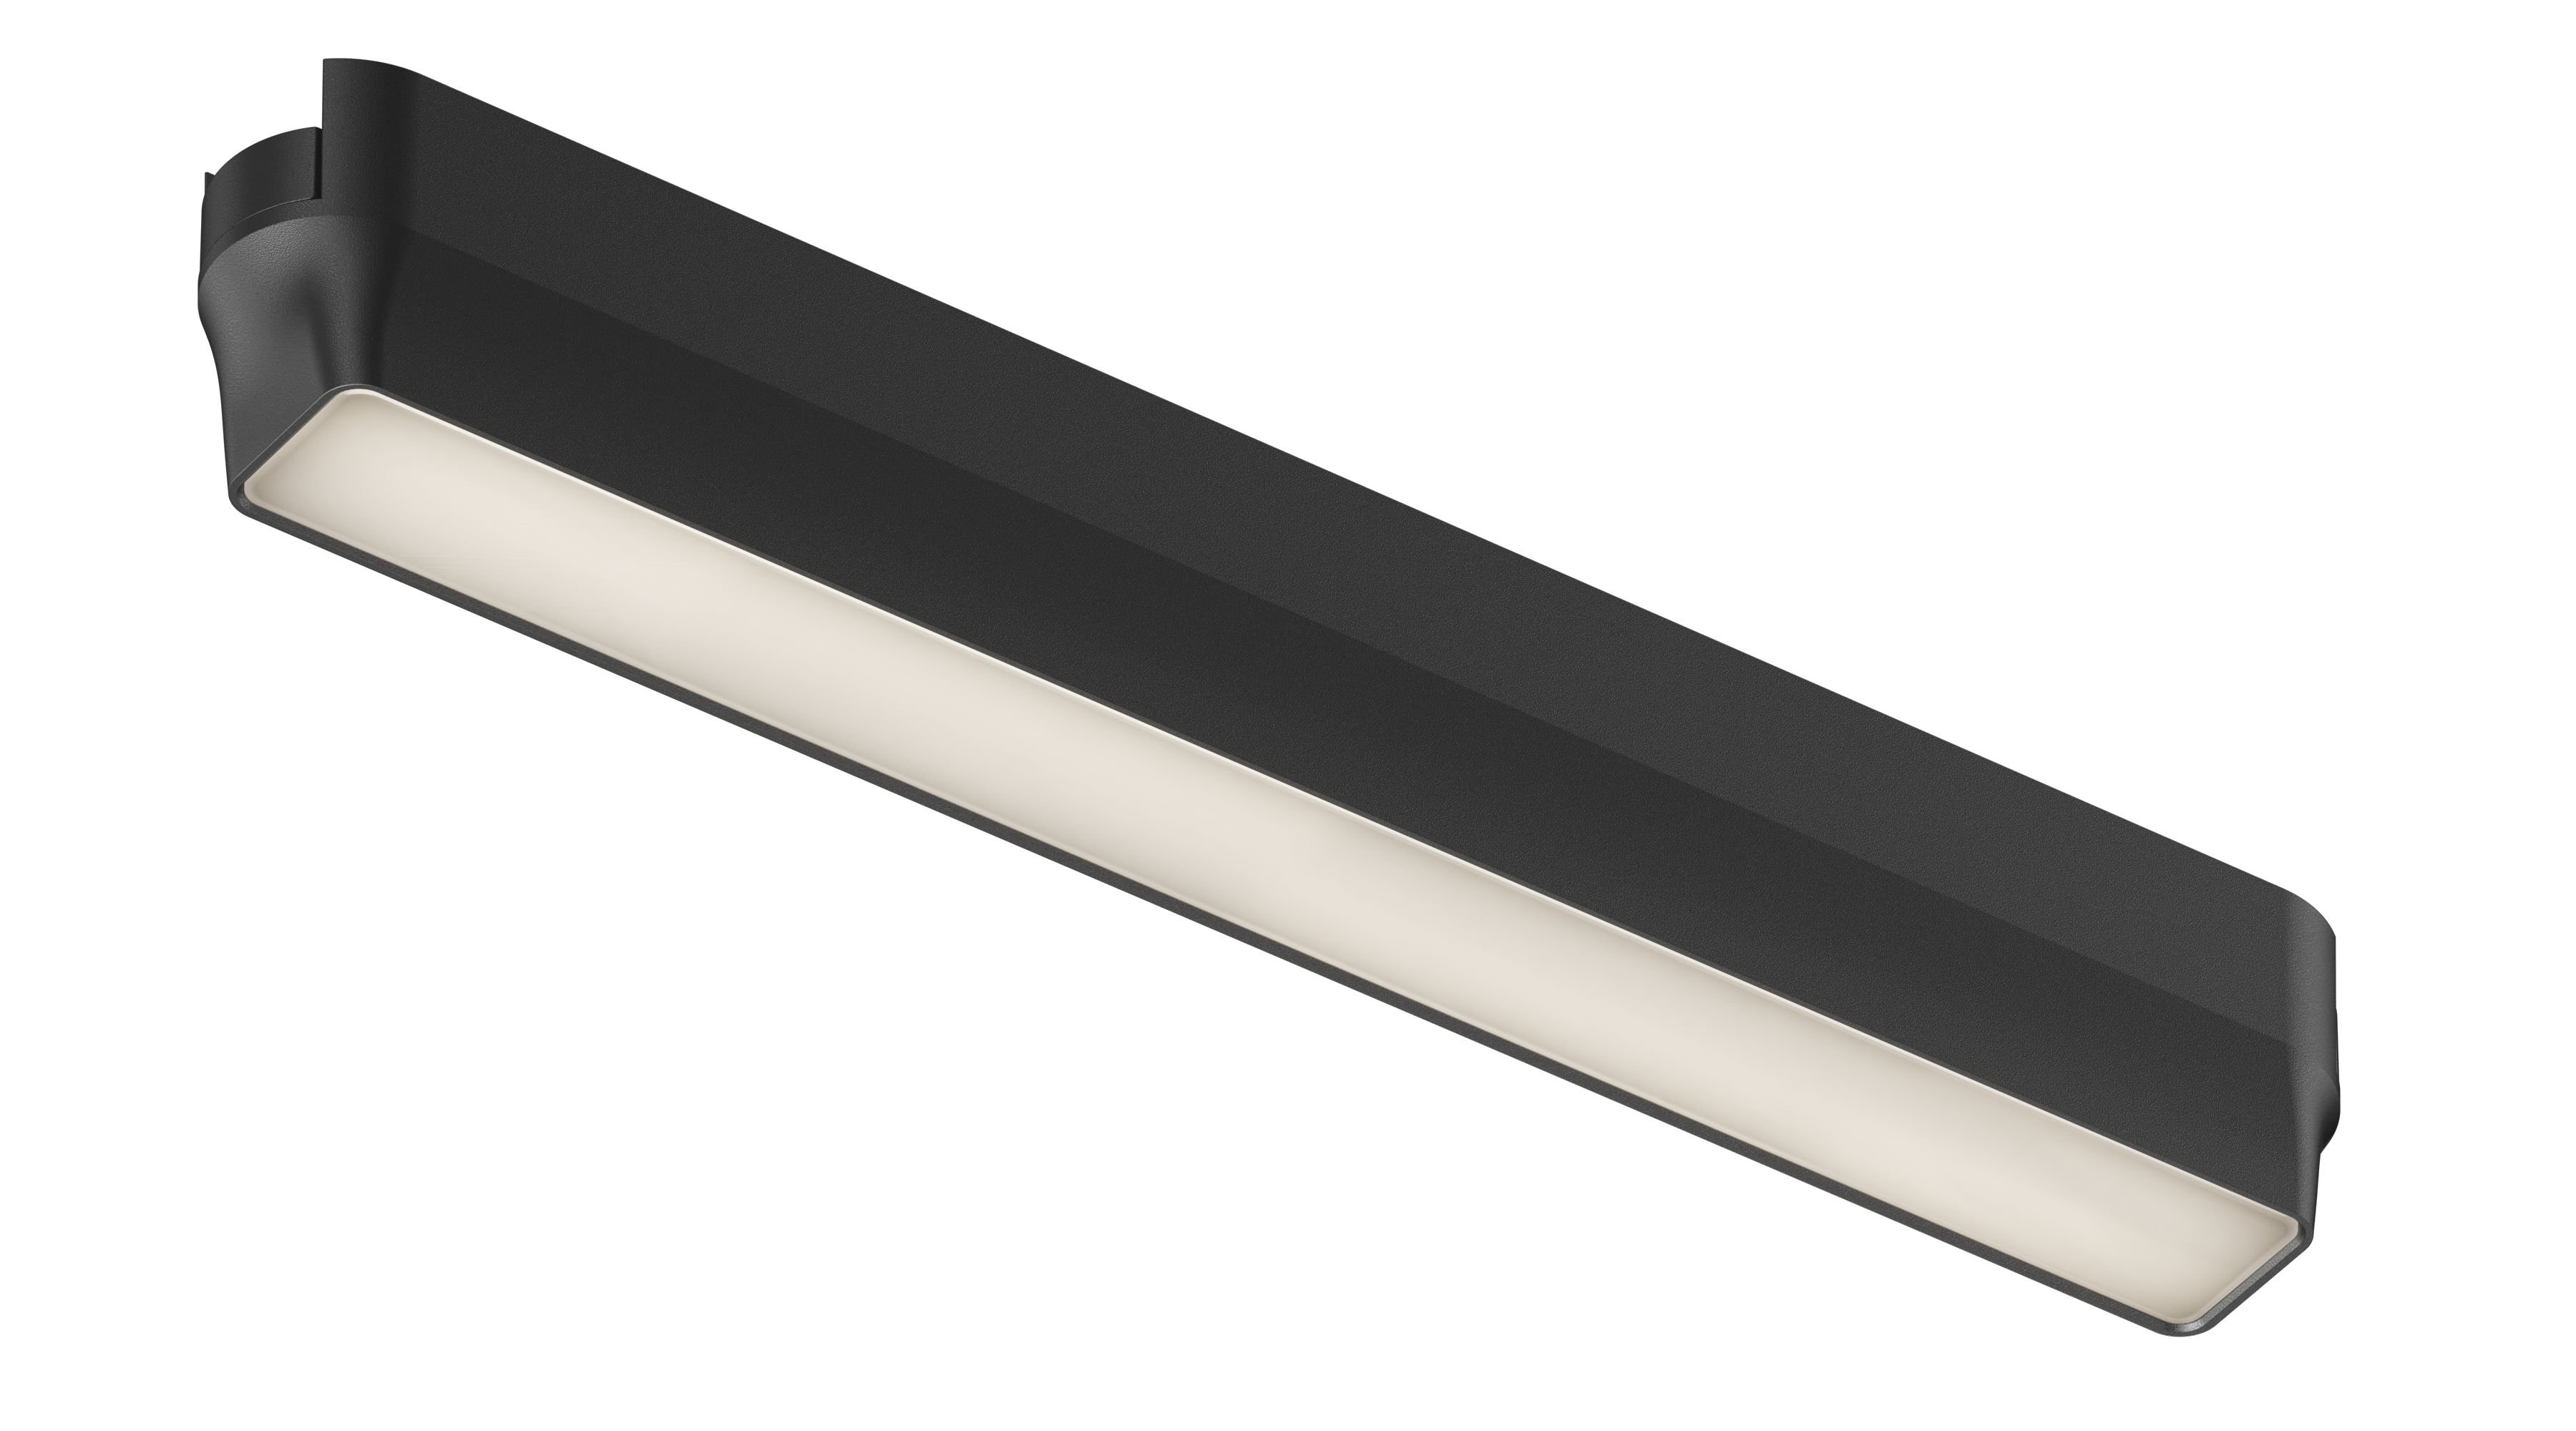 Videi draudzīgs LED magnētiskais sliežu ceļa apgaismojums ar plānu dizainu, kas nodrošina spilgtu, bet mīkstu apgaismojumu, ilgu kalpošanas laiku un spēcīgu magnētisko adsorbciju.